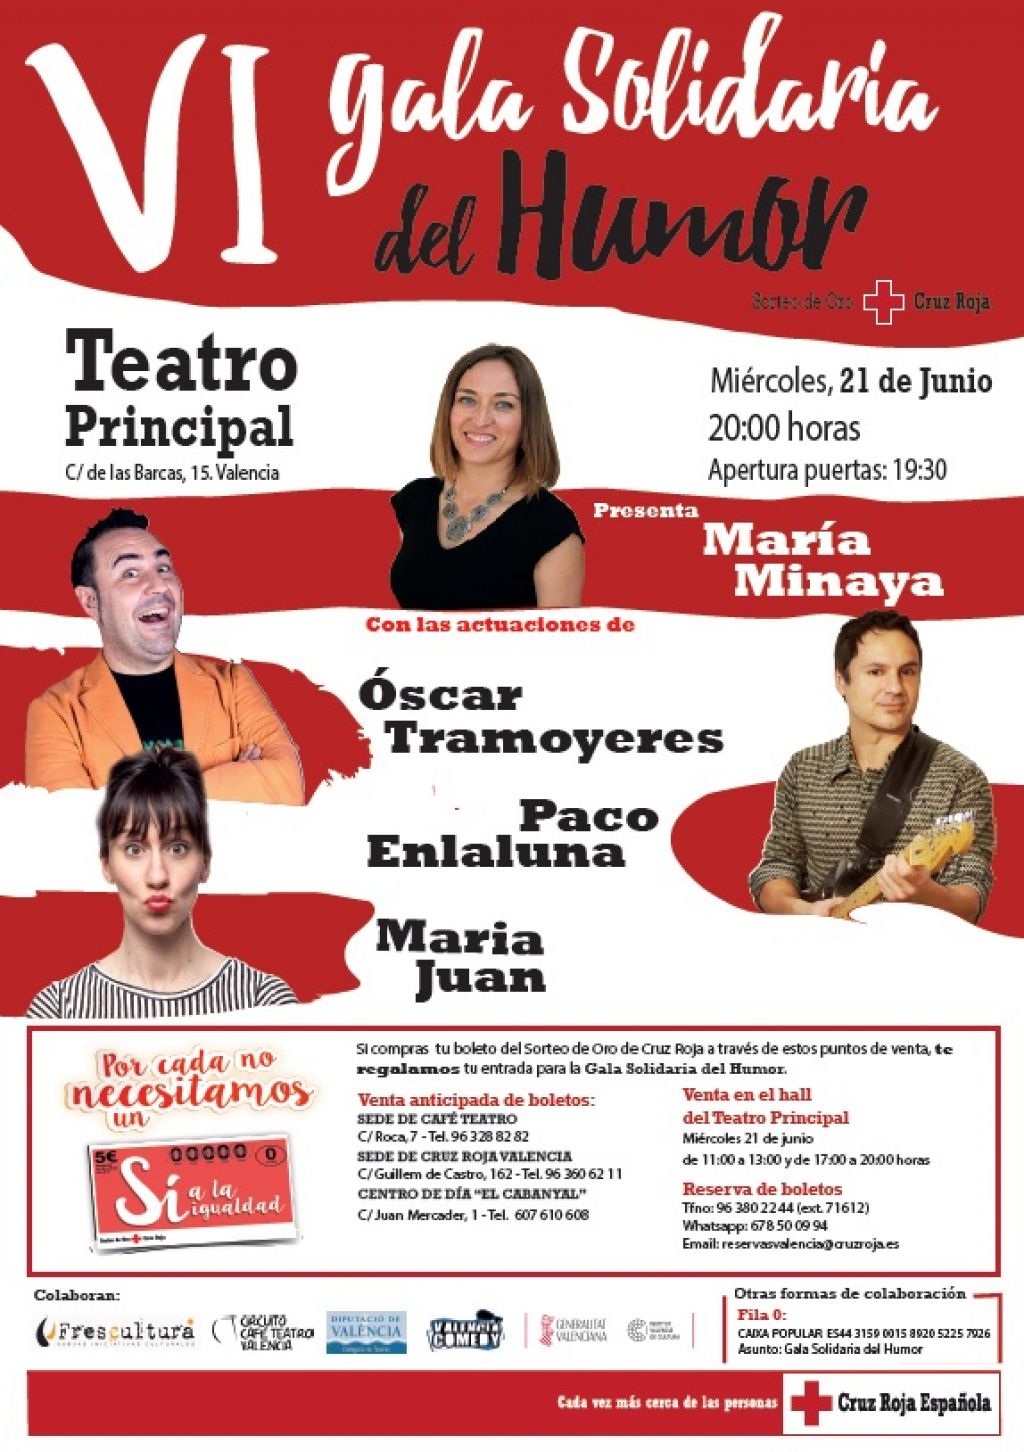  Cruz Roja celebrará el 21 junio la VI Gala Solidaria del Humor en el Teatro Principal